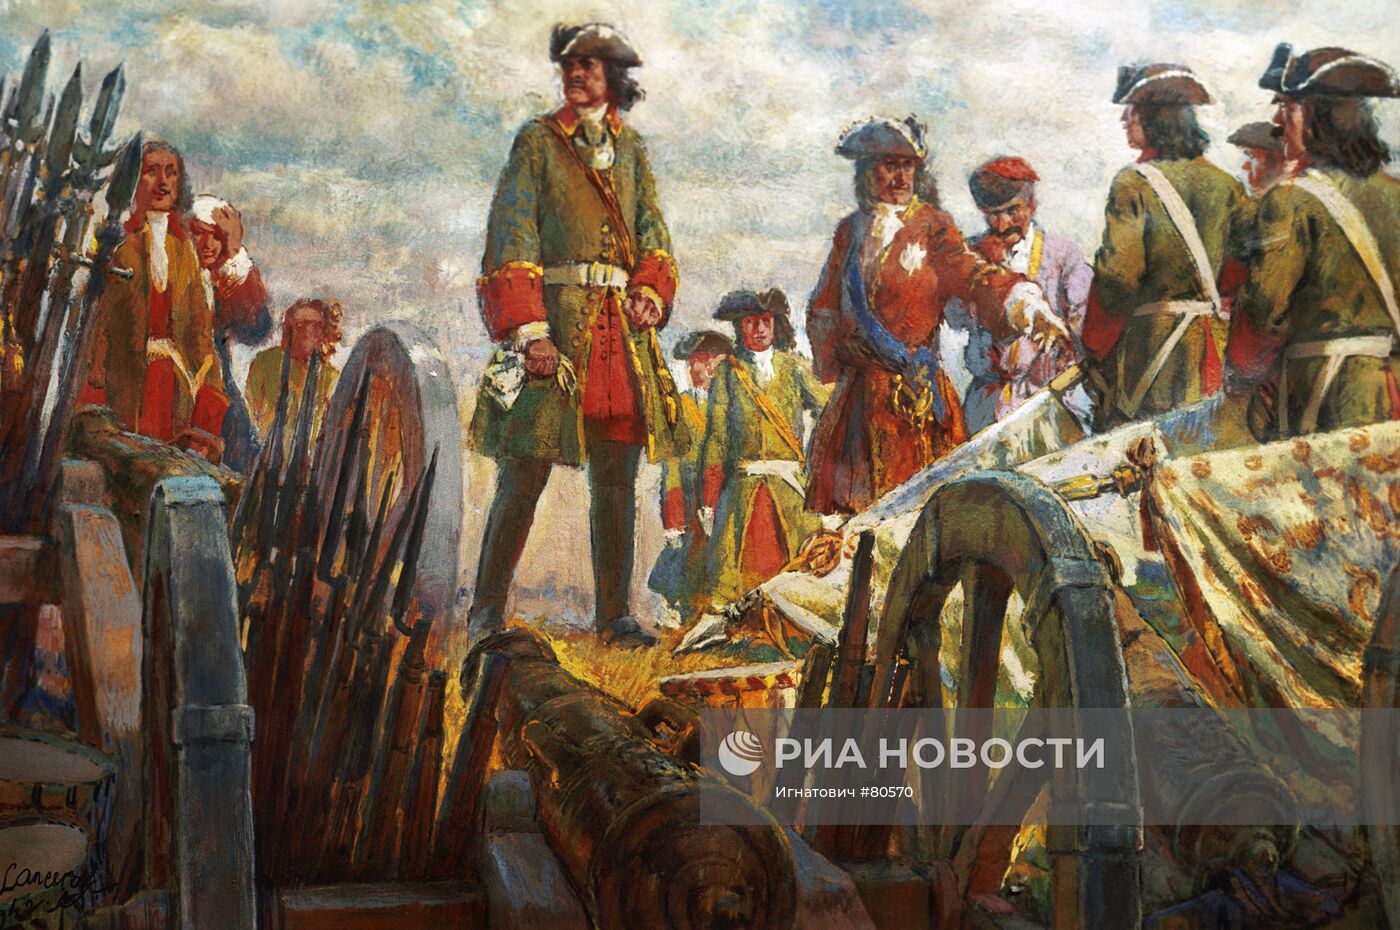 Репродукция иллюстрации "Полтавская победа"